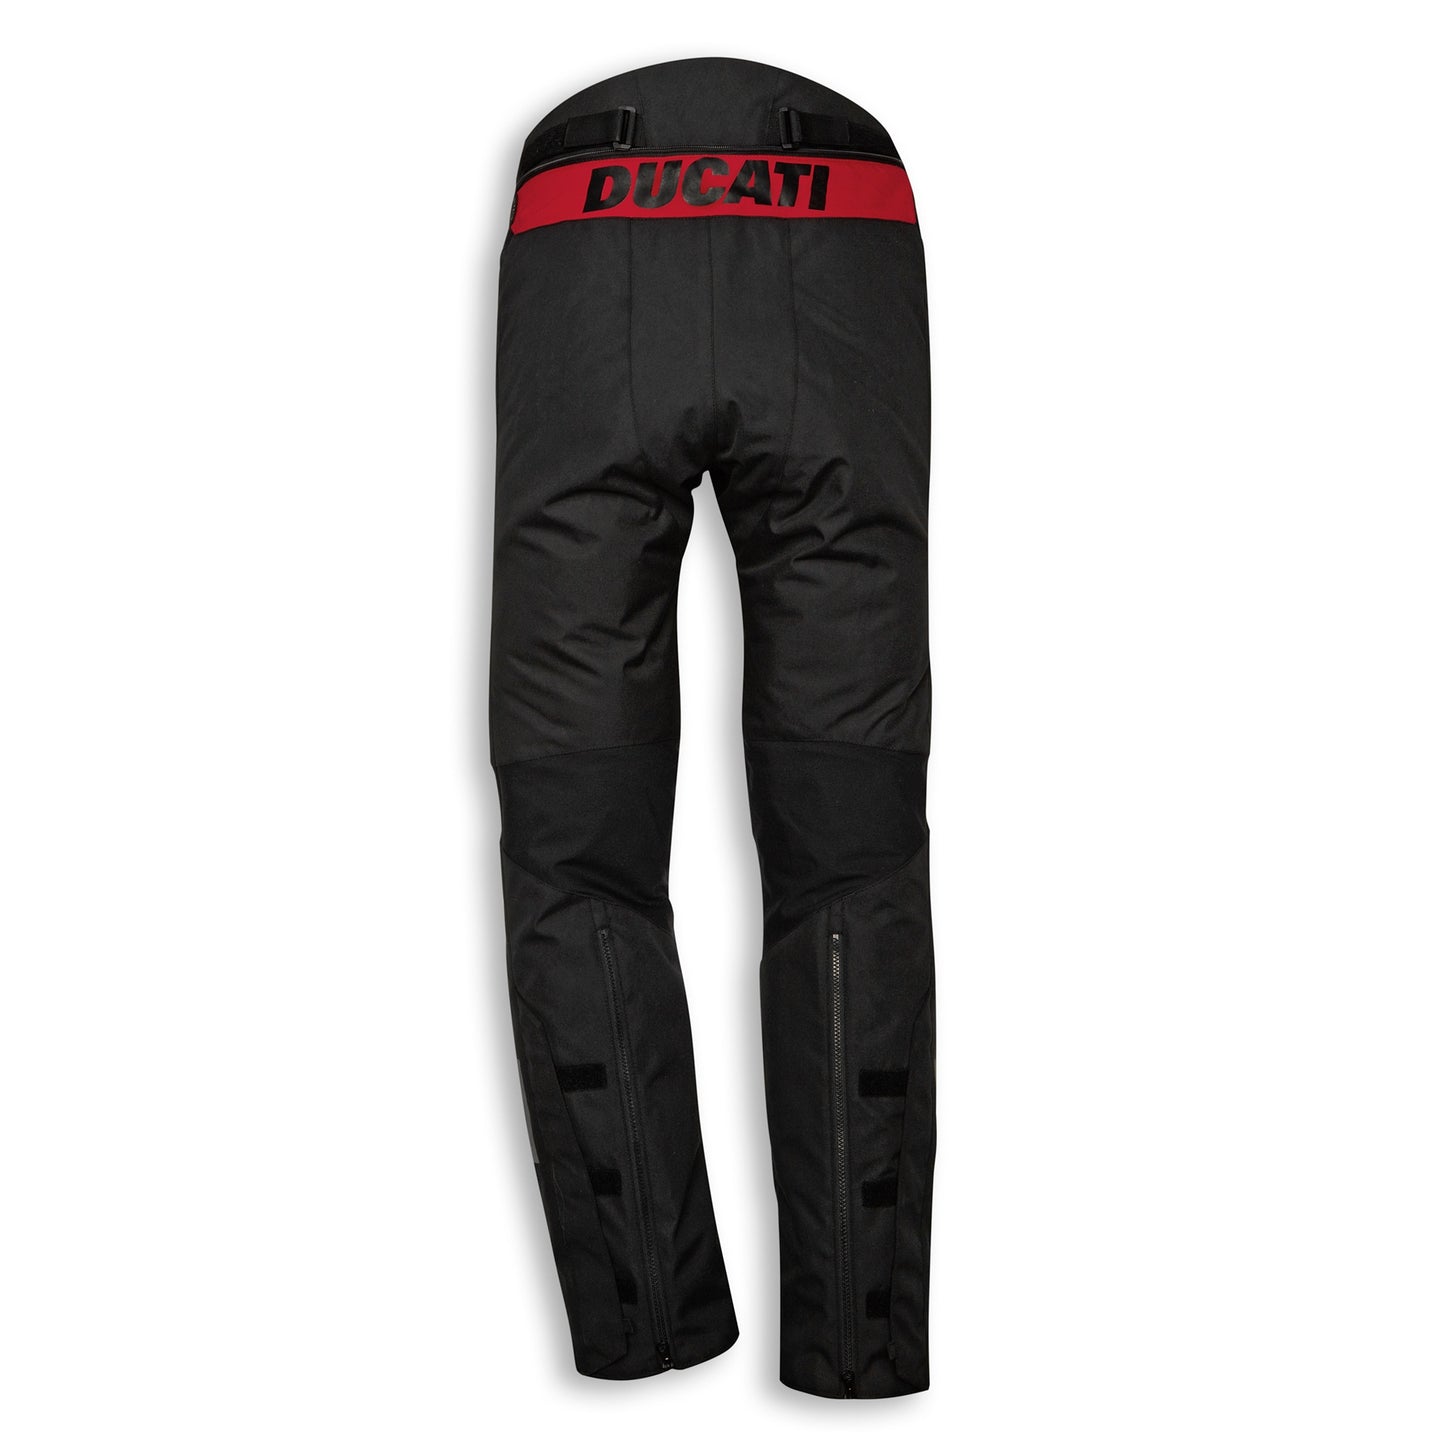 Ducati Tour C4 Trousers